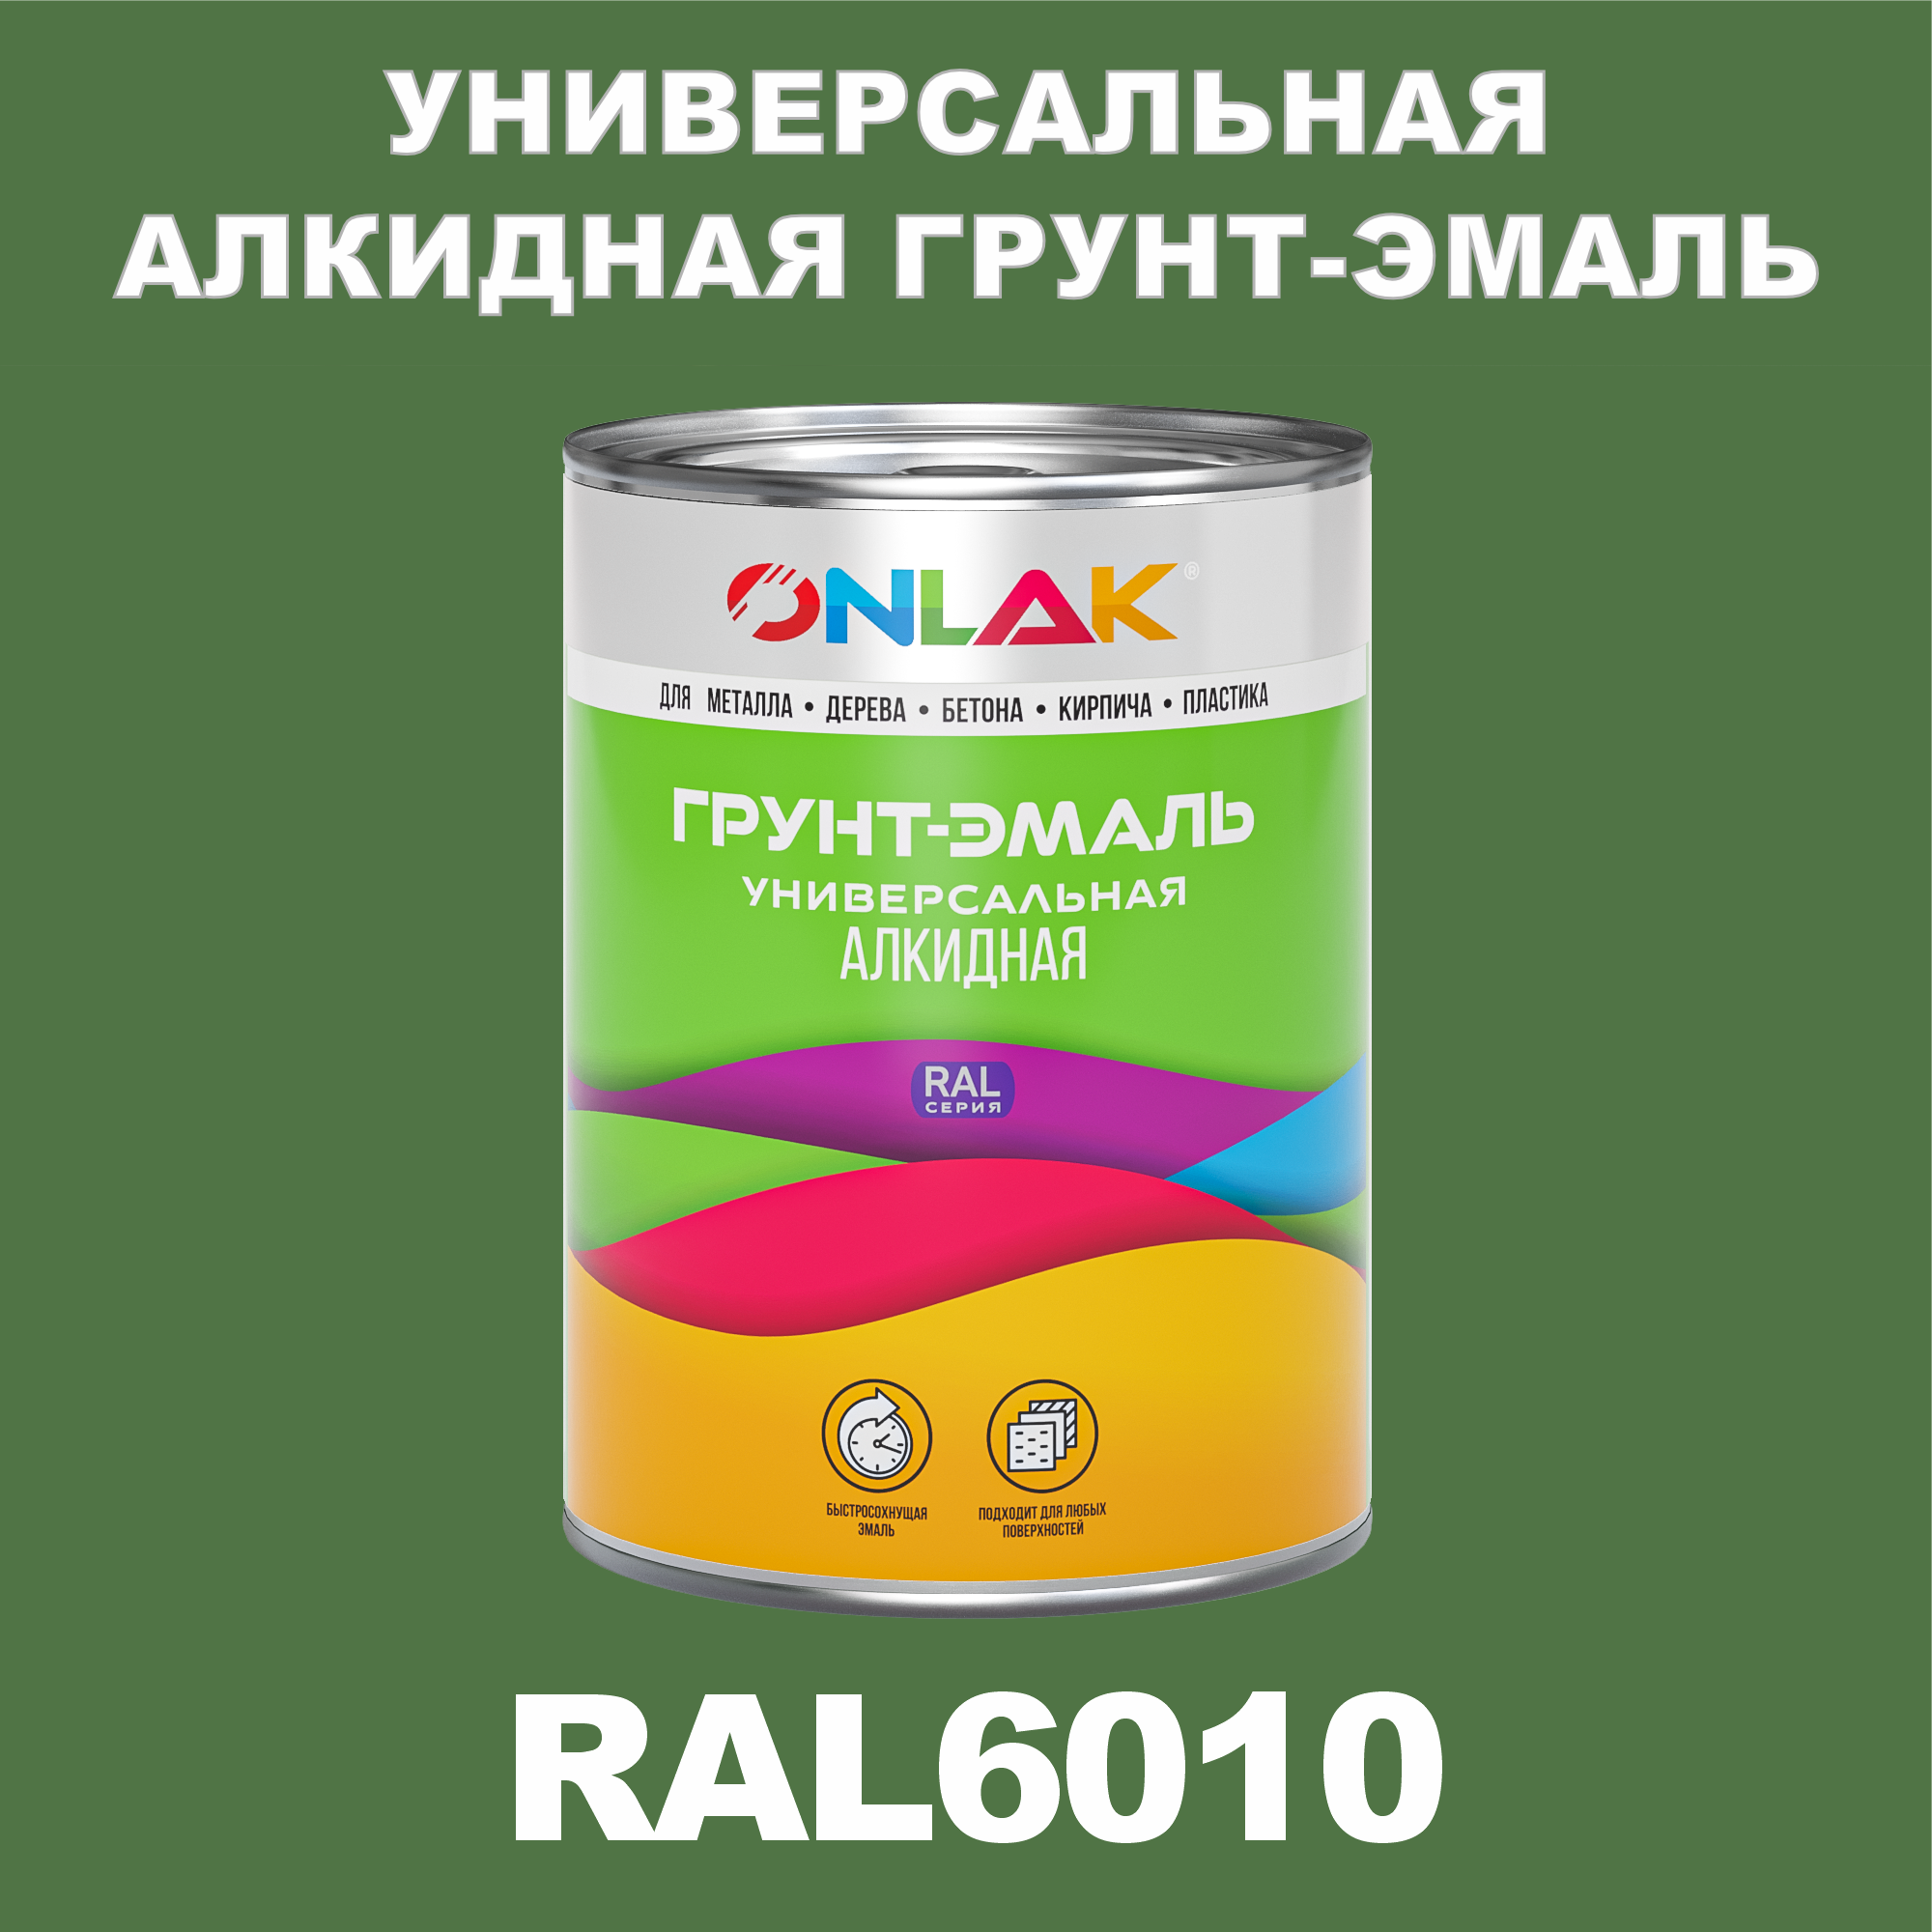 Грунт-эмаль ONLAK 1К RAL6010 антикоррозионная алкидная по металлу по ржавчине 1 кг грунт эмаль yollo по ржавчине алкидная синяя 0 9 кг